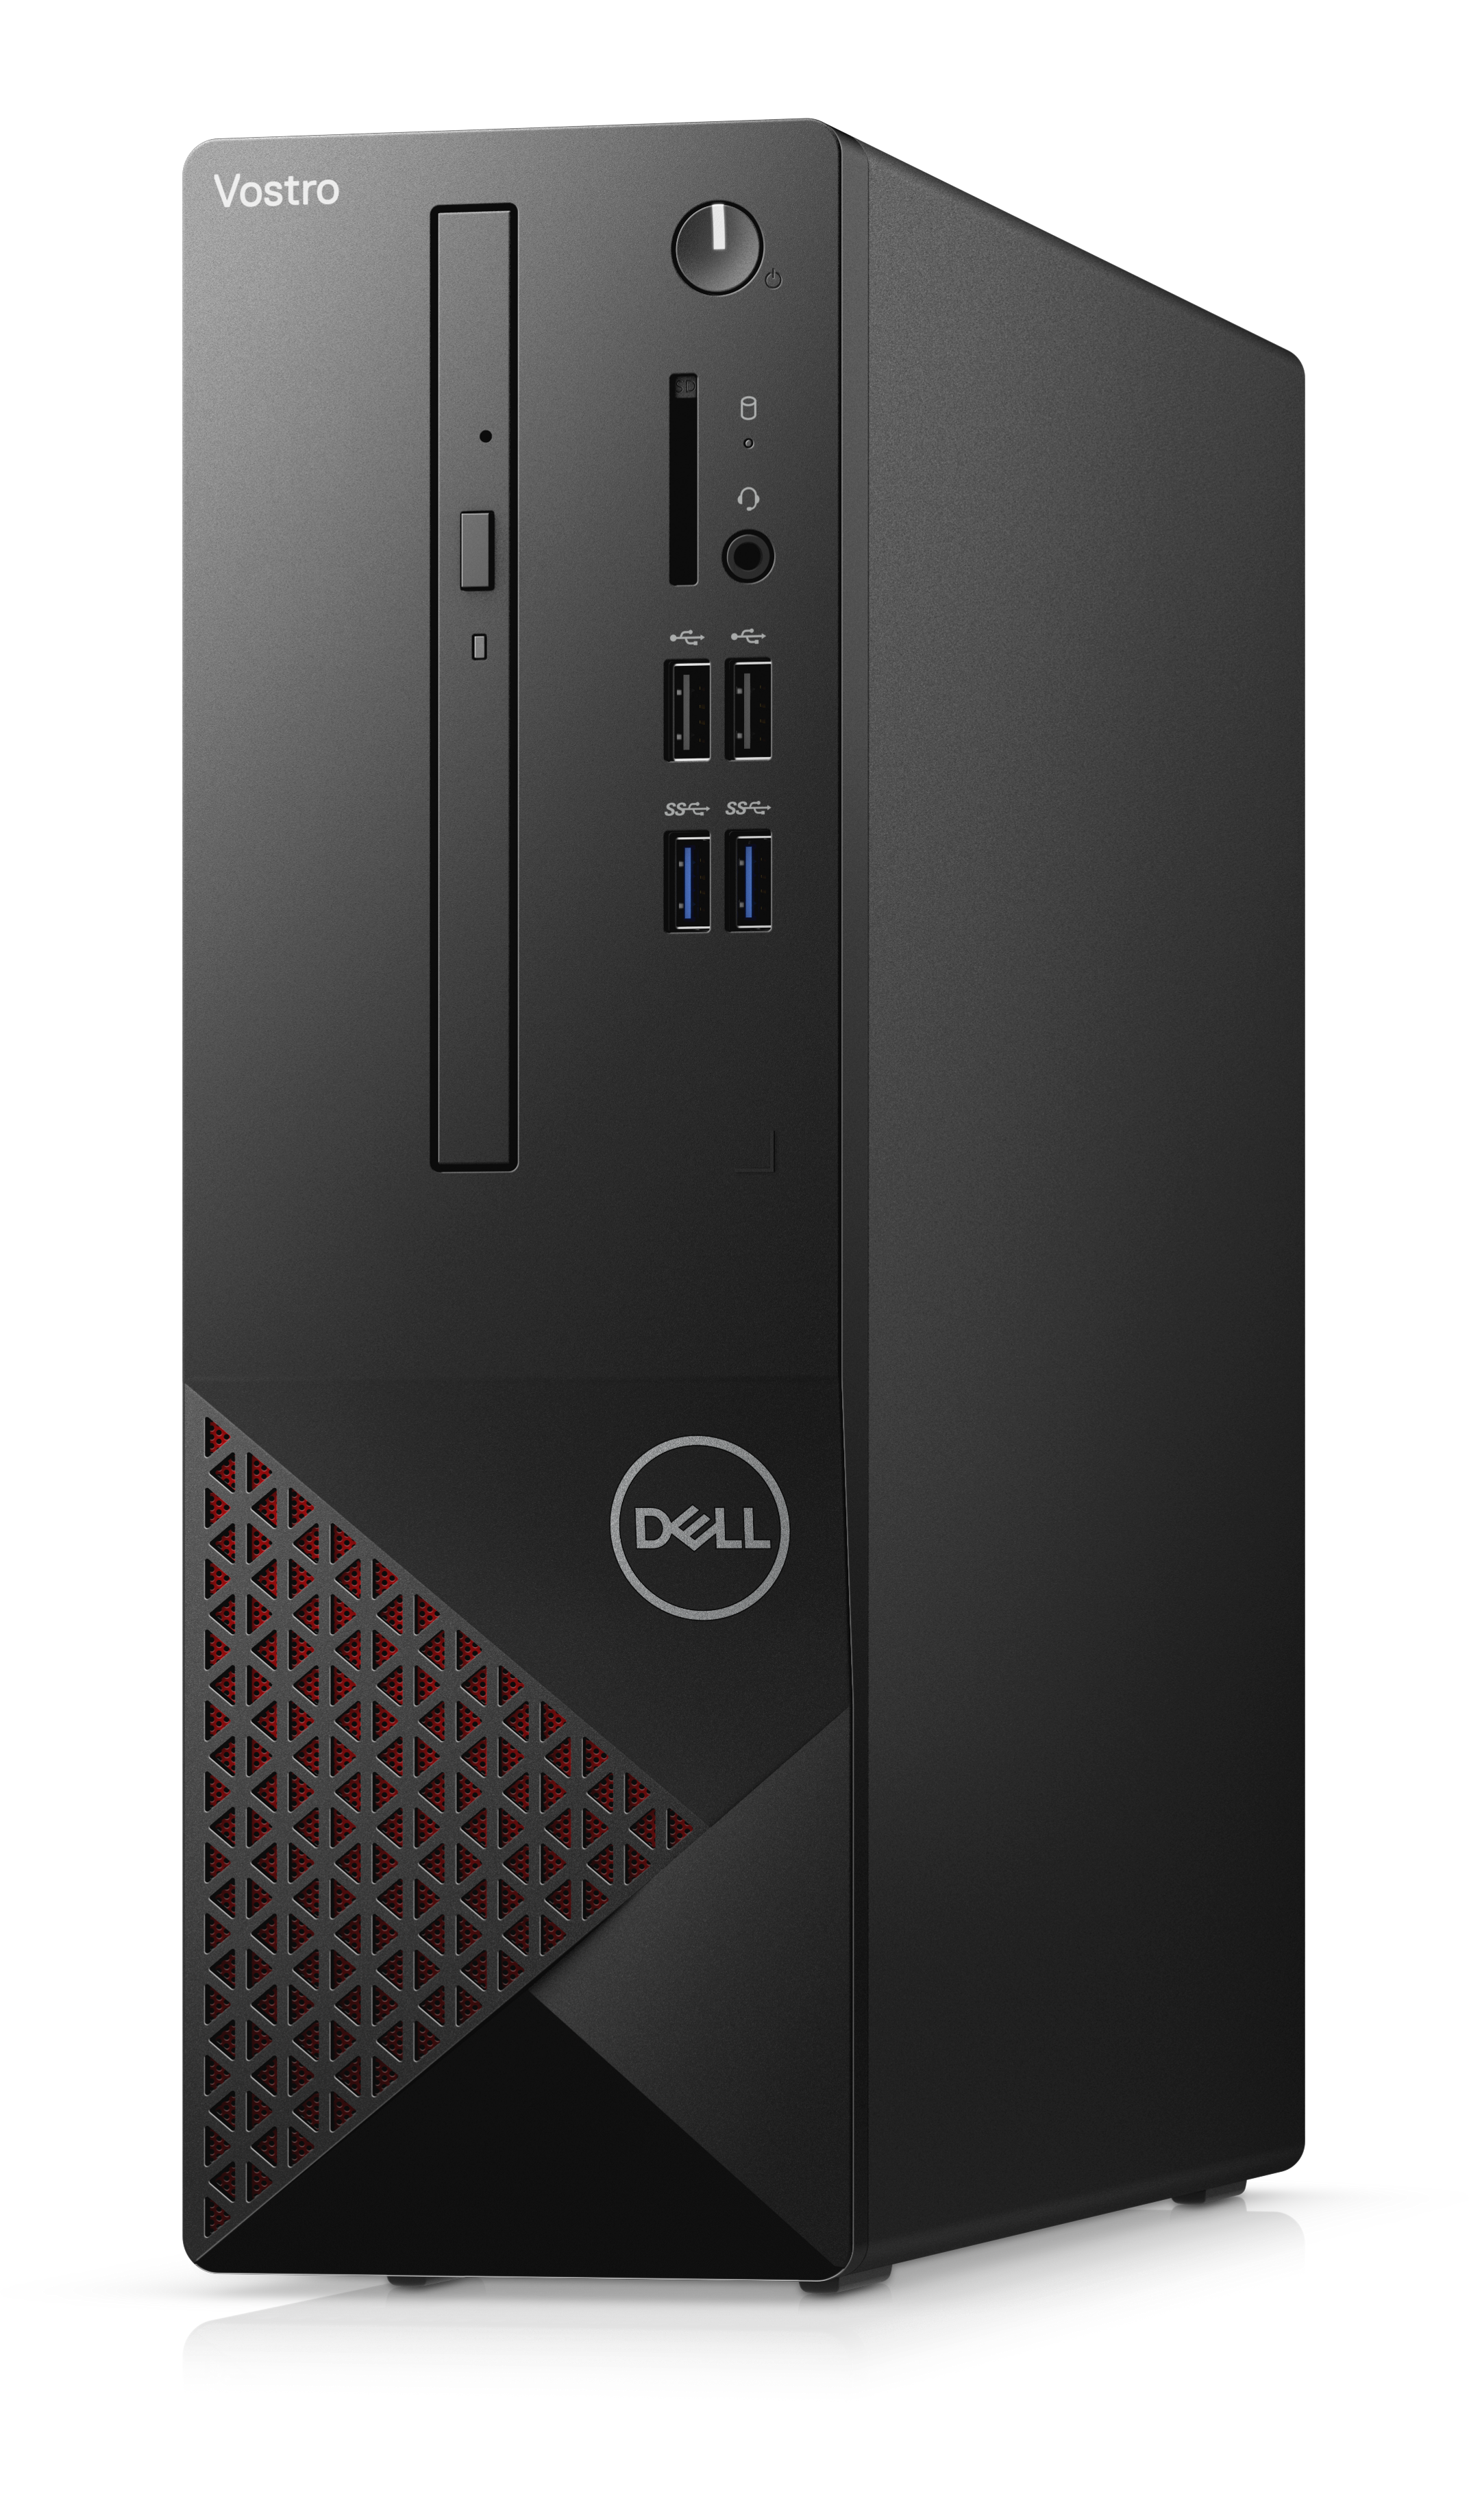 Системный блок Dell Vostro 3681 SFF, Intel Core i5 10400 2.9GHz, 8Gb RAM, 256Gb SSD, W10Pro, черный, клавиатура, мышь (3681-2680) Плохая упаковка